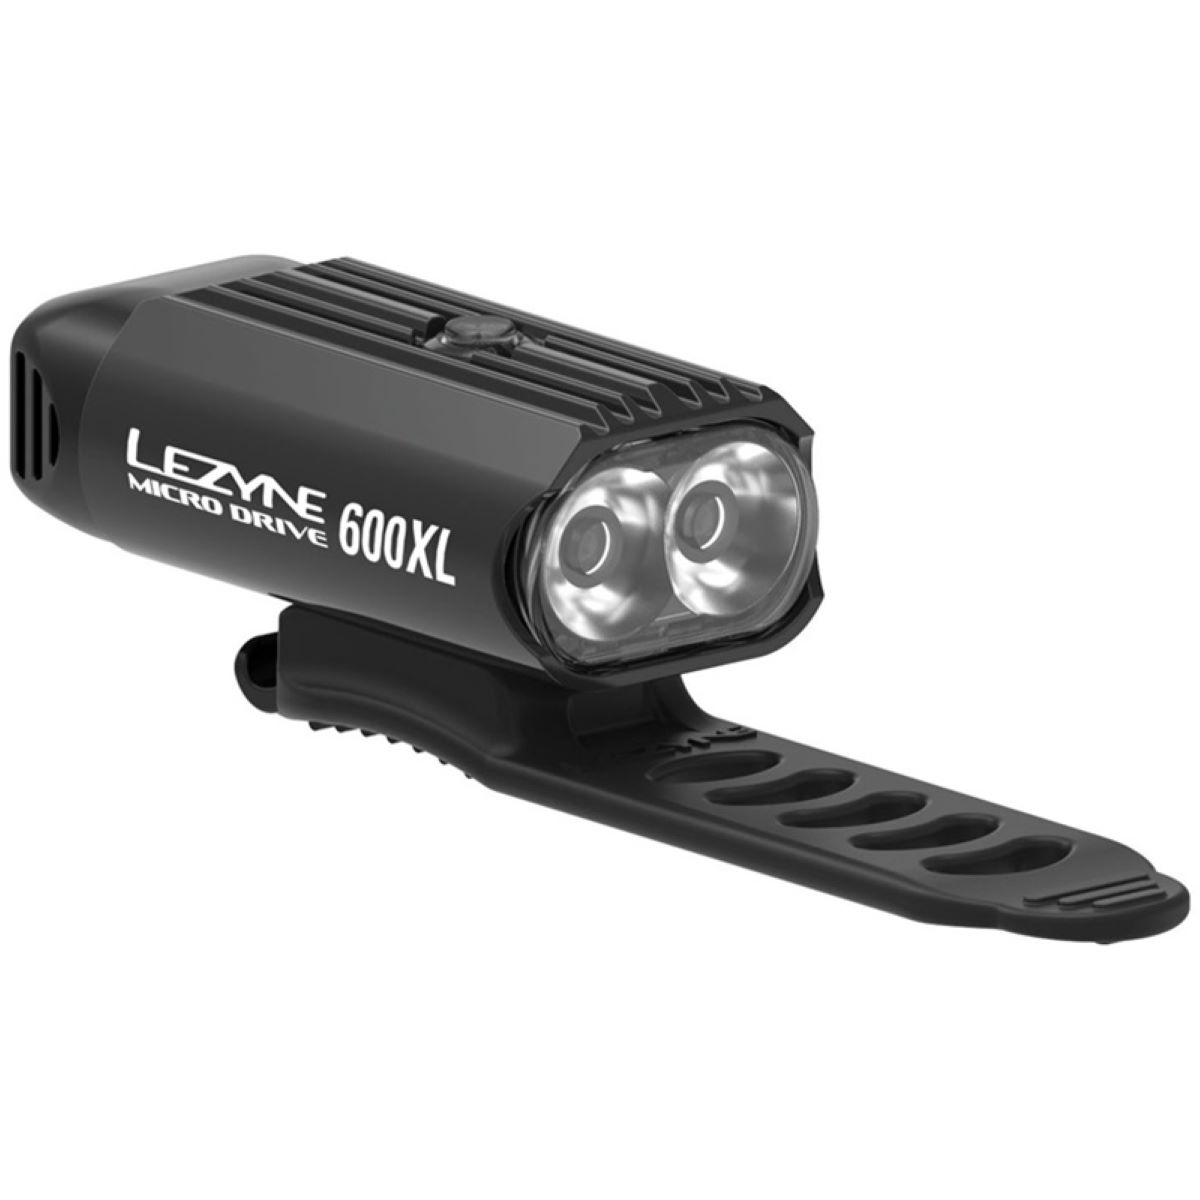 Luz delantera Lezyne Micro Drive 600XL (600 lúmenes) - Luces delanteras